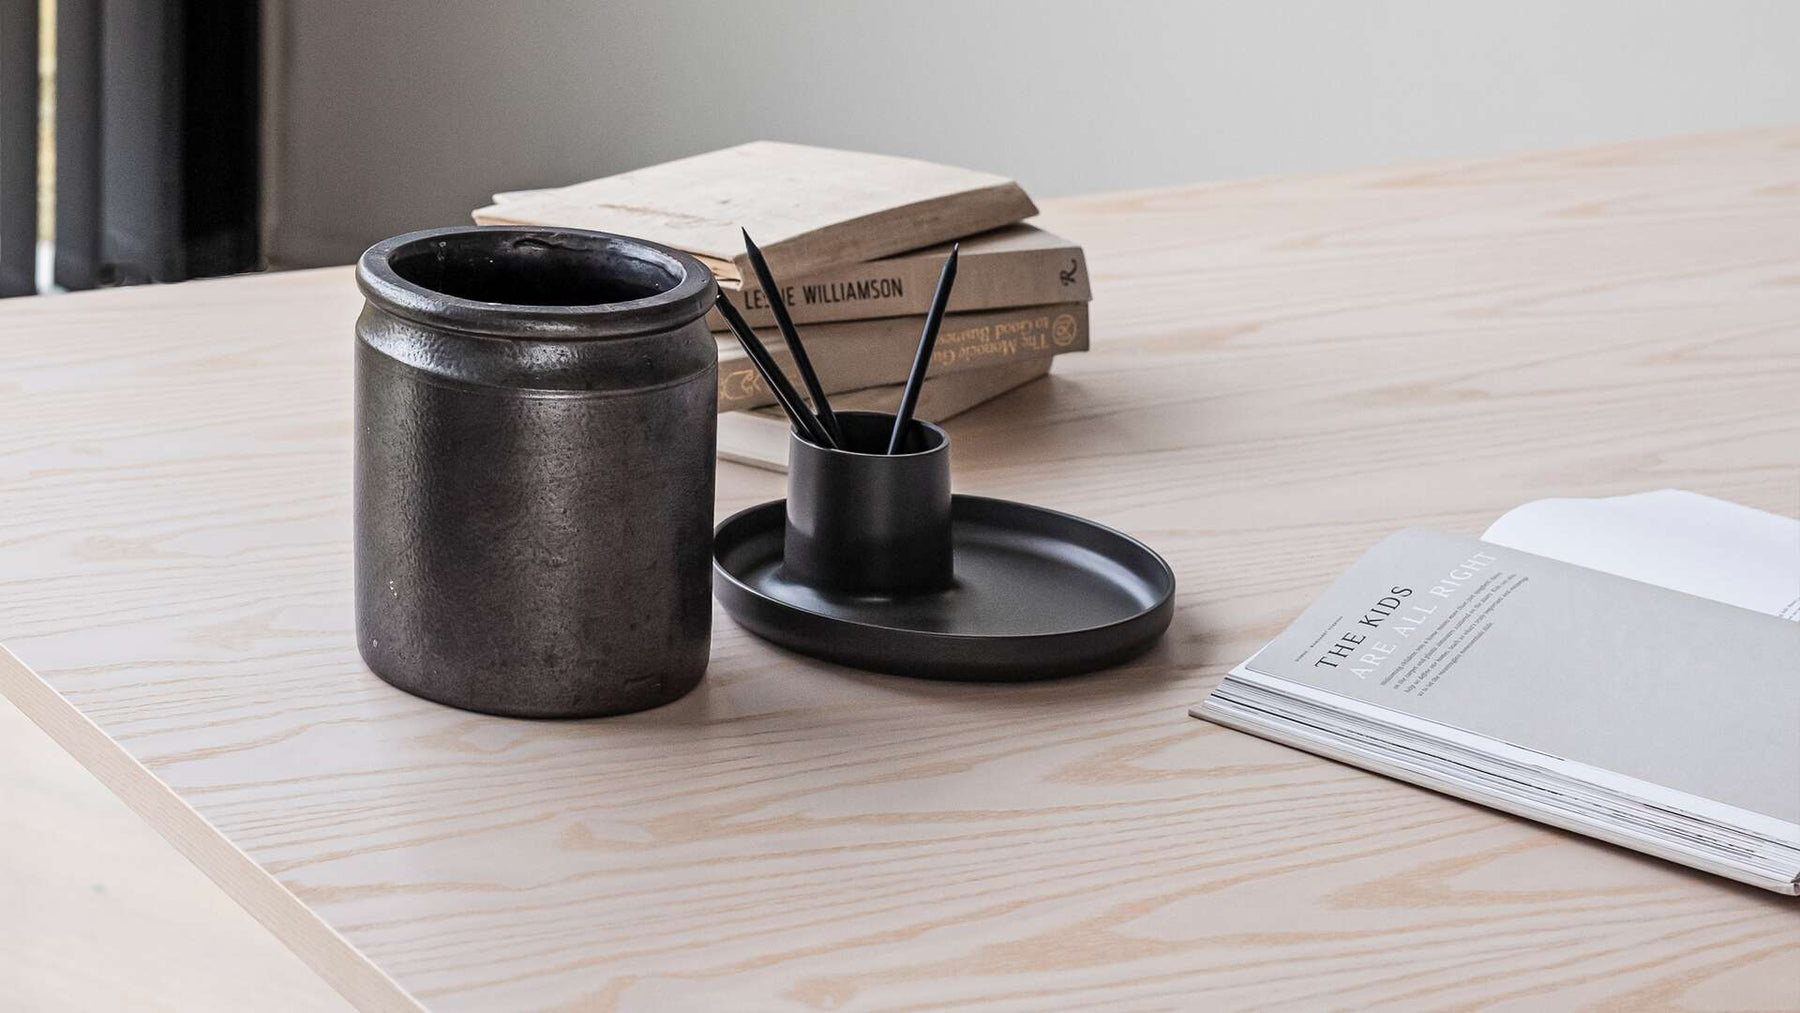 keramik kruka står på bordet tillsammans med ett bar böcker och ett pennställ med 4 pennor i.